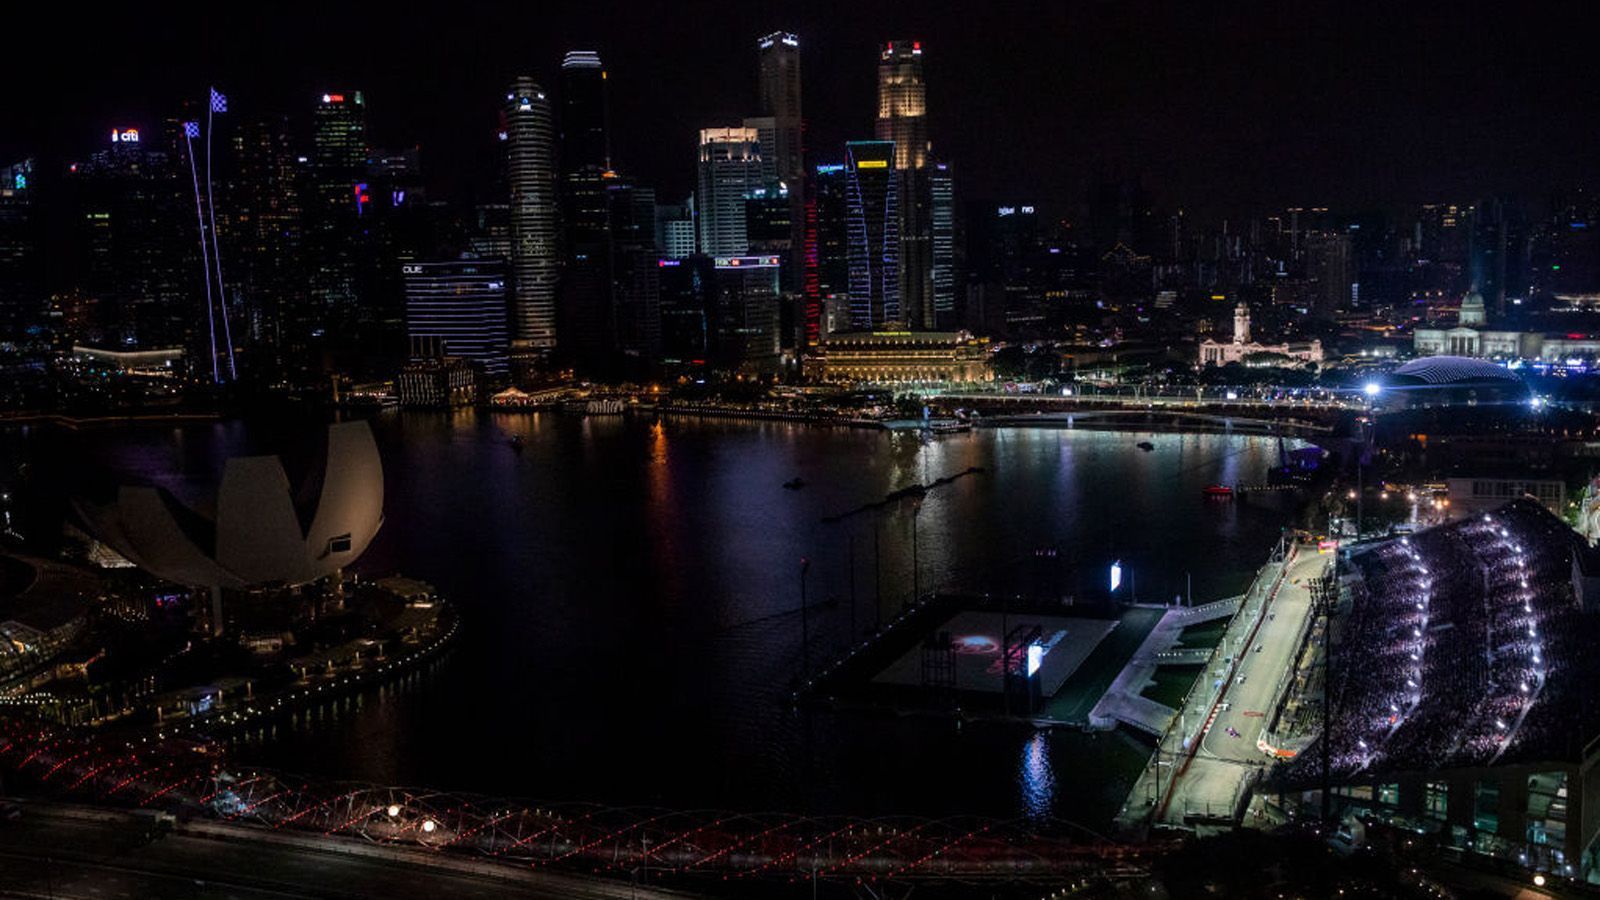 
                <strong>Marina Bay Circuit Singapur</strong><br>
                Das Nachtrennen von Singapur ist seit 2008 ein fester Termin im Kalender der Formel 1. Wenn die Boliden auf der hell beleuchteten Straßen des Stadtstaates ihre Runden drehen und die Zuschauer die beeindruckende Skyline der asiatischen Metropole bestaunen können, ist der Singapur Grand Prix zurück. Da es sich um einen Stadtkurs handelt, ist die Infrastruktur des Rennens zum größten Teil temporär errichtet. Sebastian Vettel und Lewis Hamilton sind mit jeweils vier Siegen die Rekordsieger des Grand Prix.
              